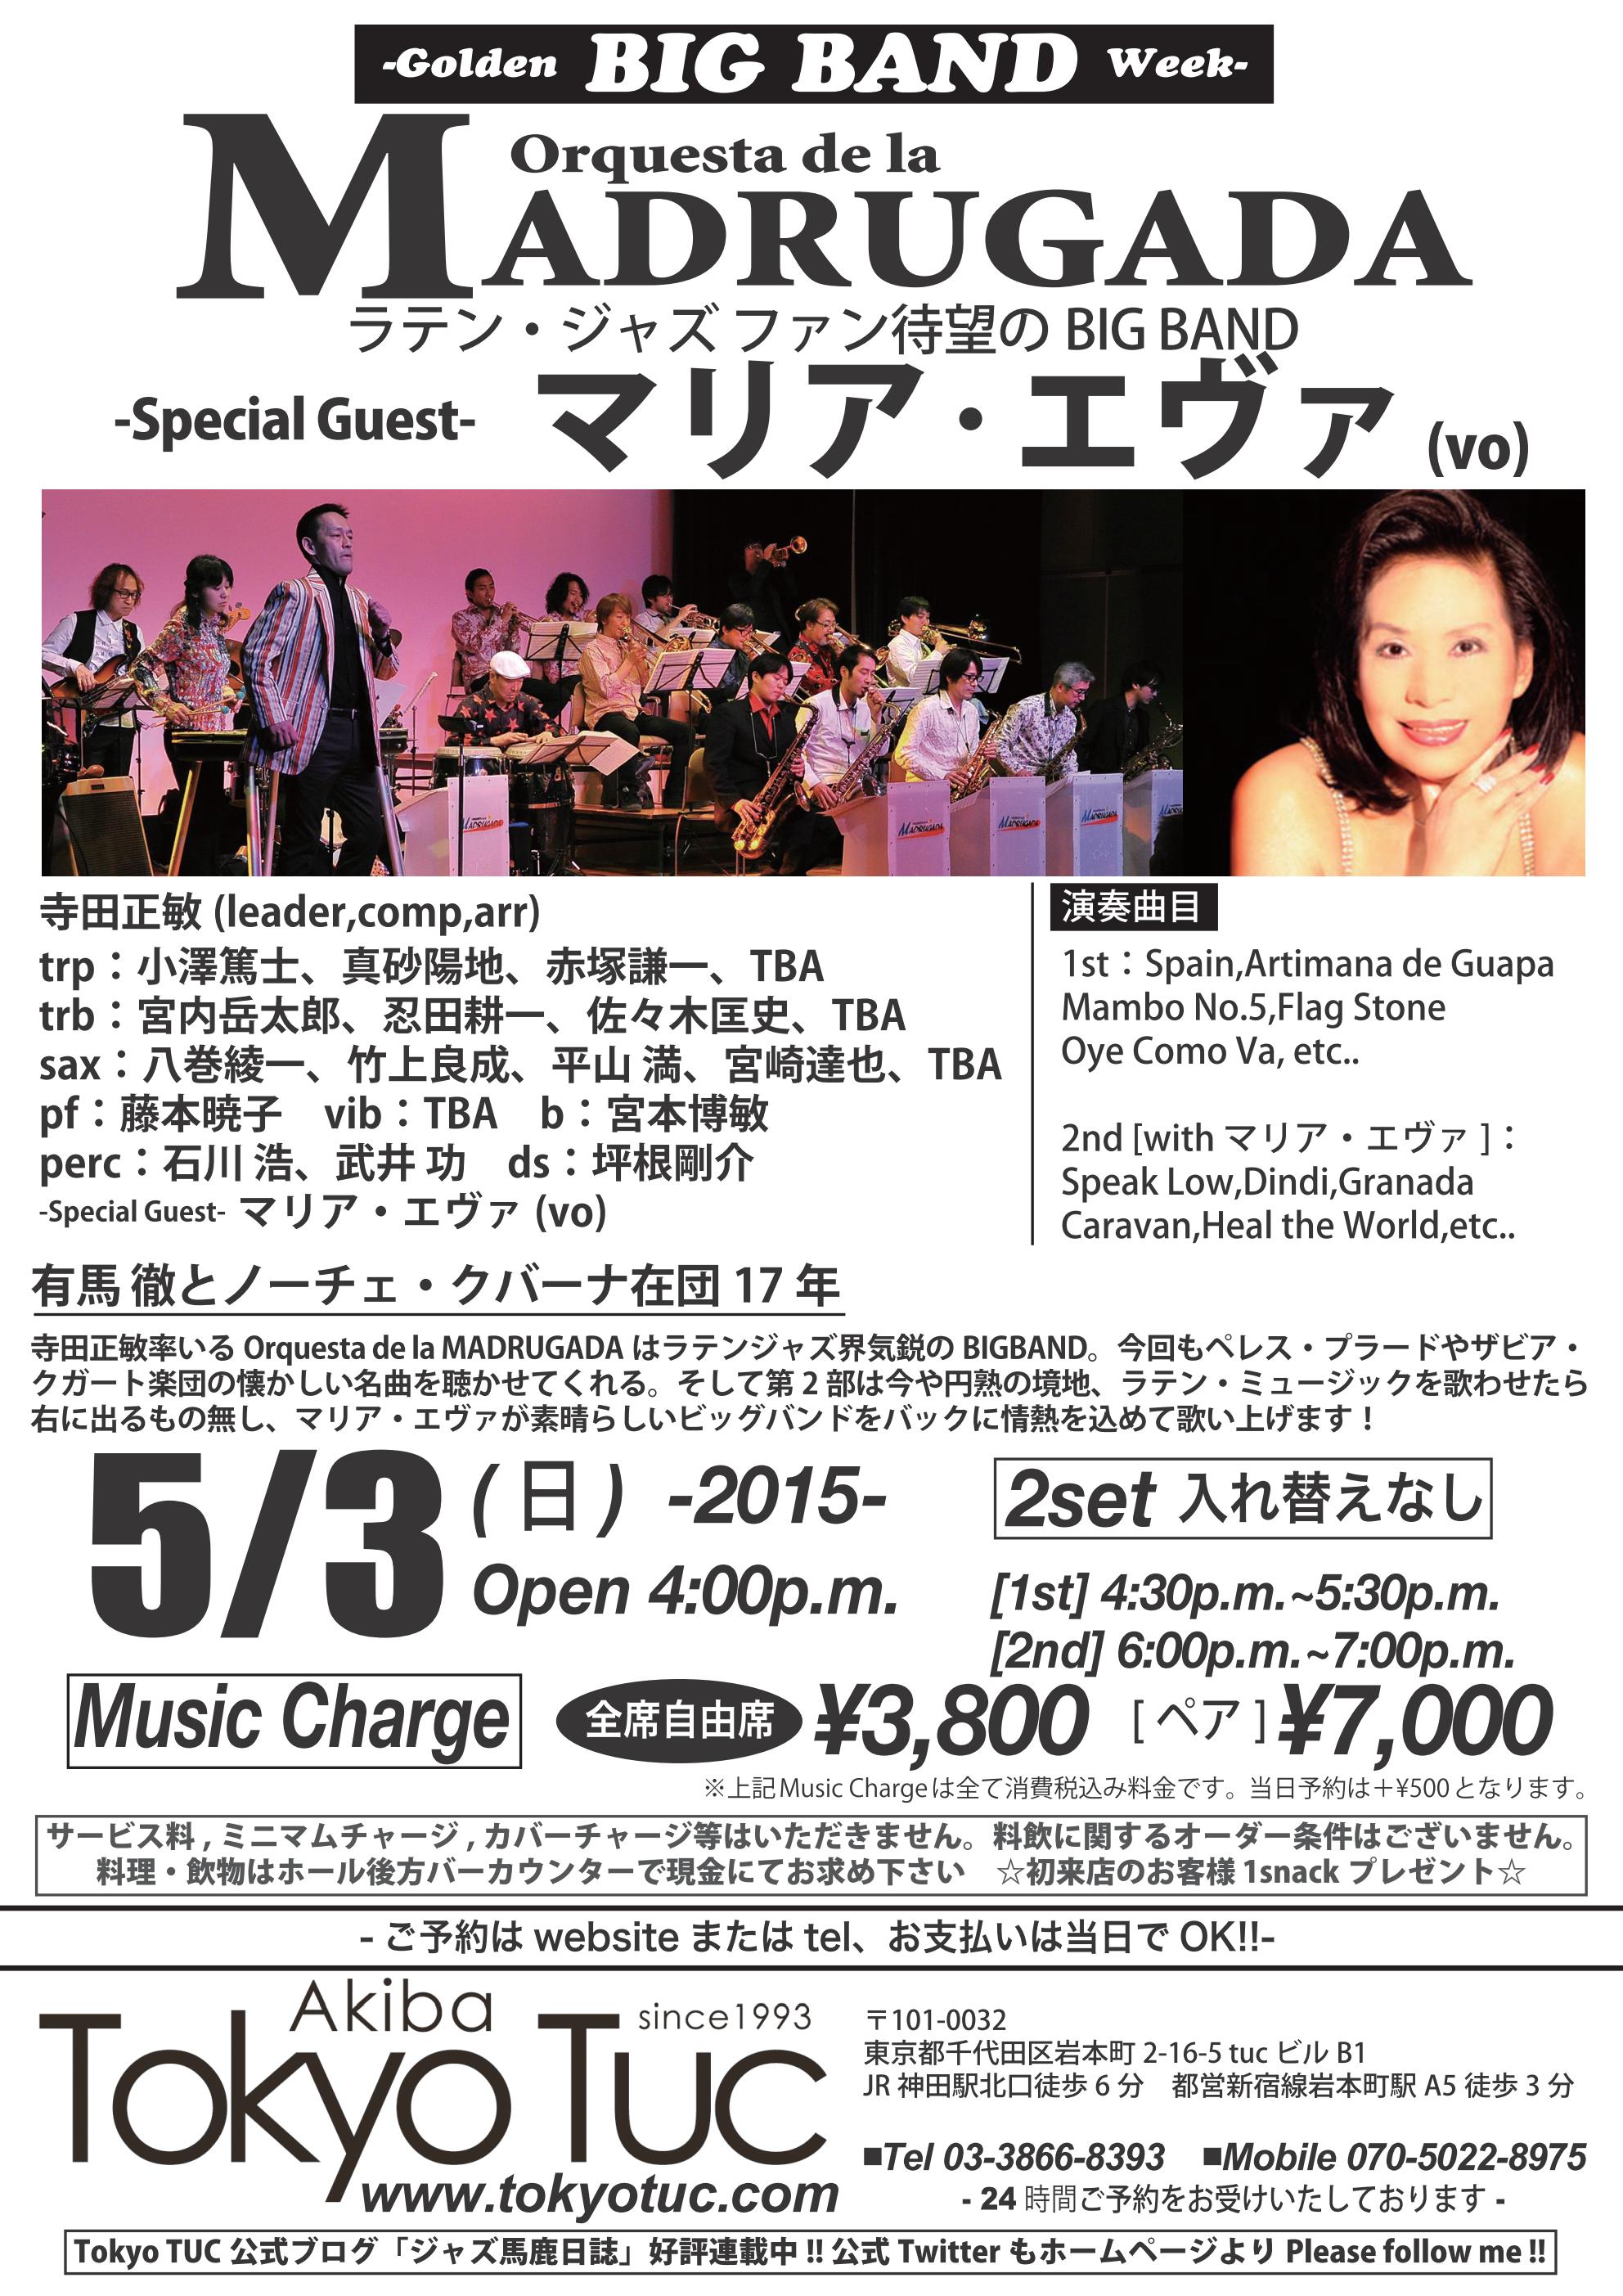 Orquesta de la MADRUGADA -Special Guest- Maria Eva ＠Tokyo TUC